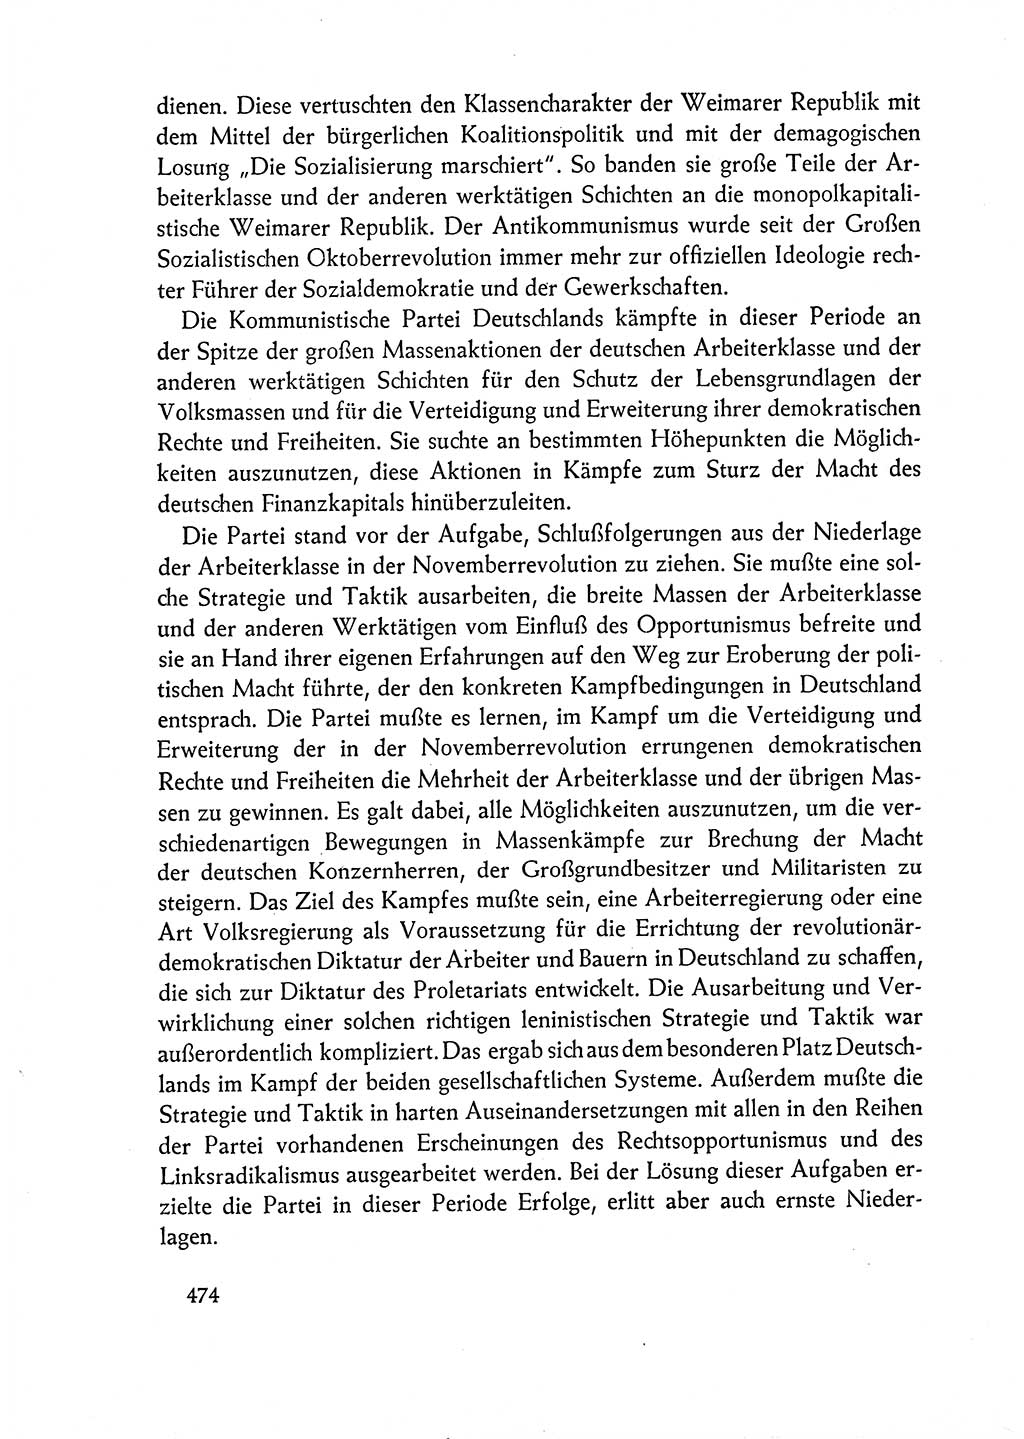 Dokumente der Sozialistischen Einheitspartei Deutschlands (SED) [Deutsche Demokratische Republik (DDR)] 1962-1963, Seite 474 (Dok. SED DDR 1962-1963, S. 474)